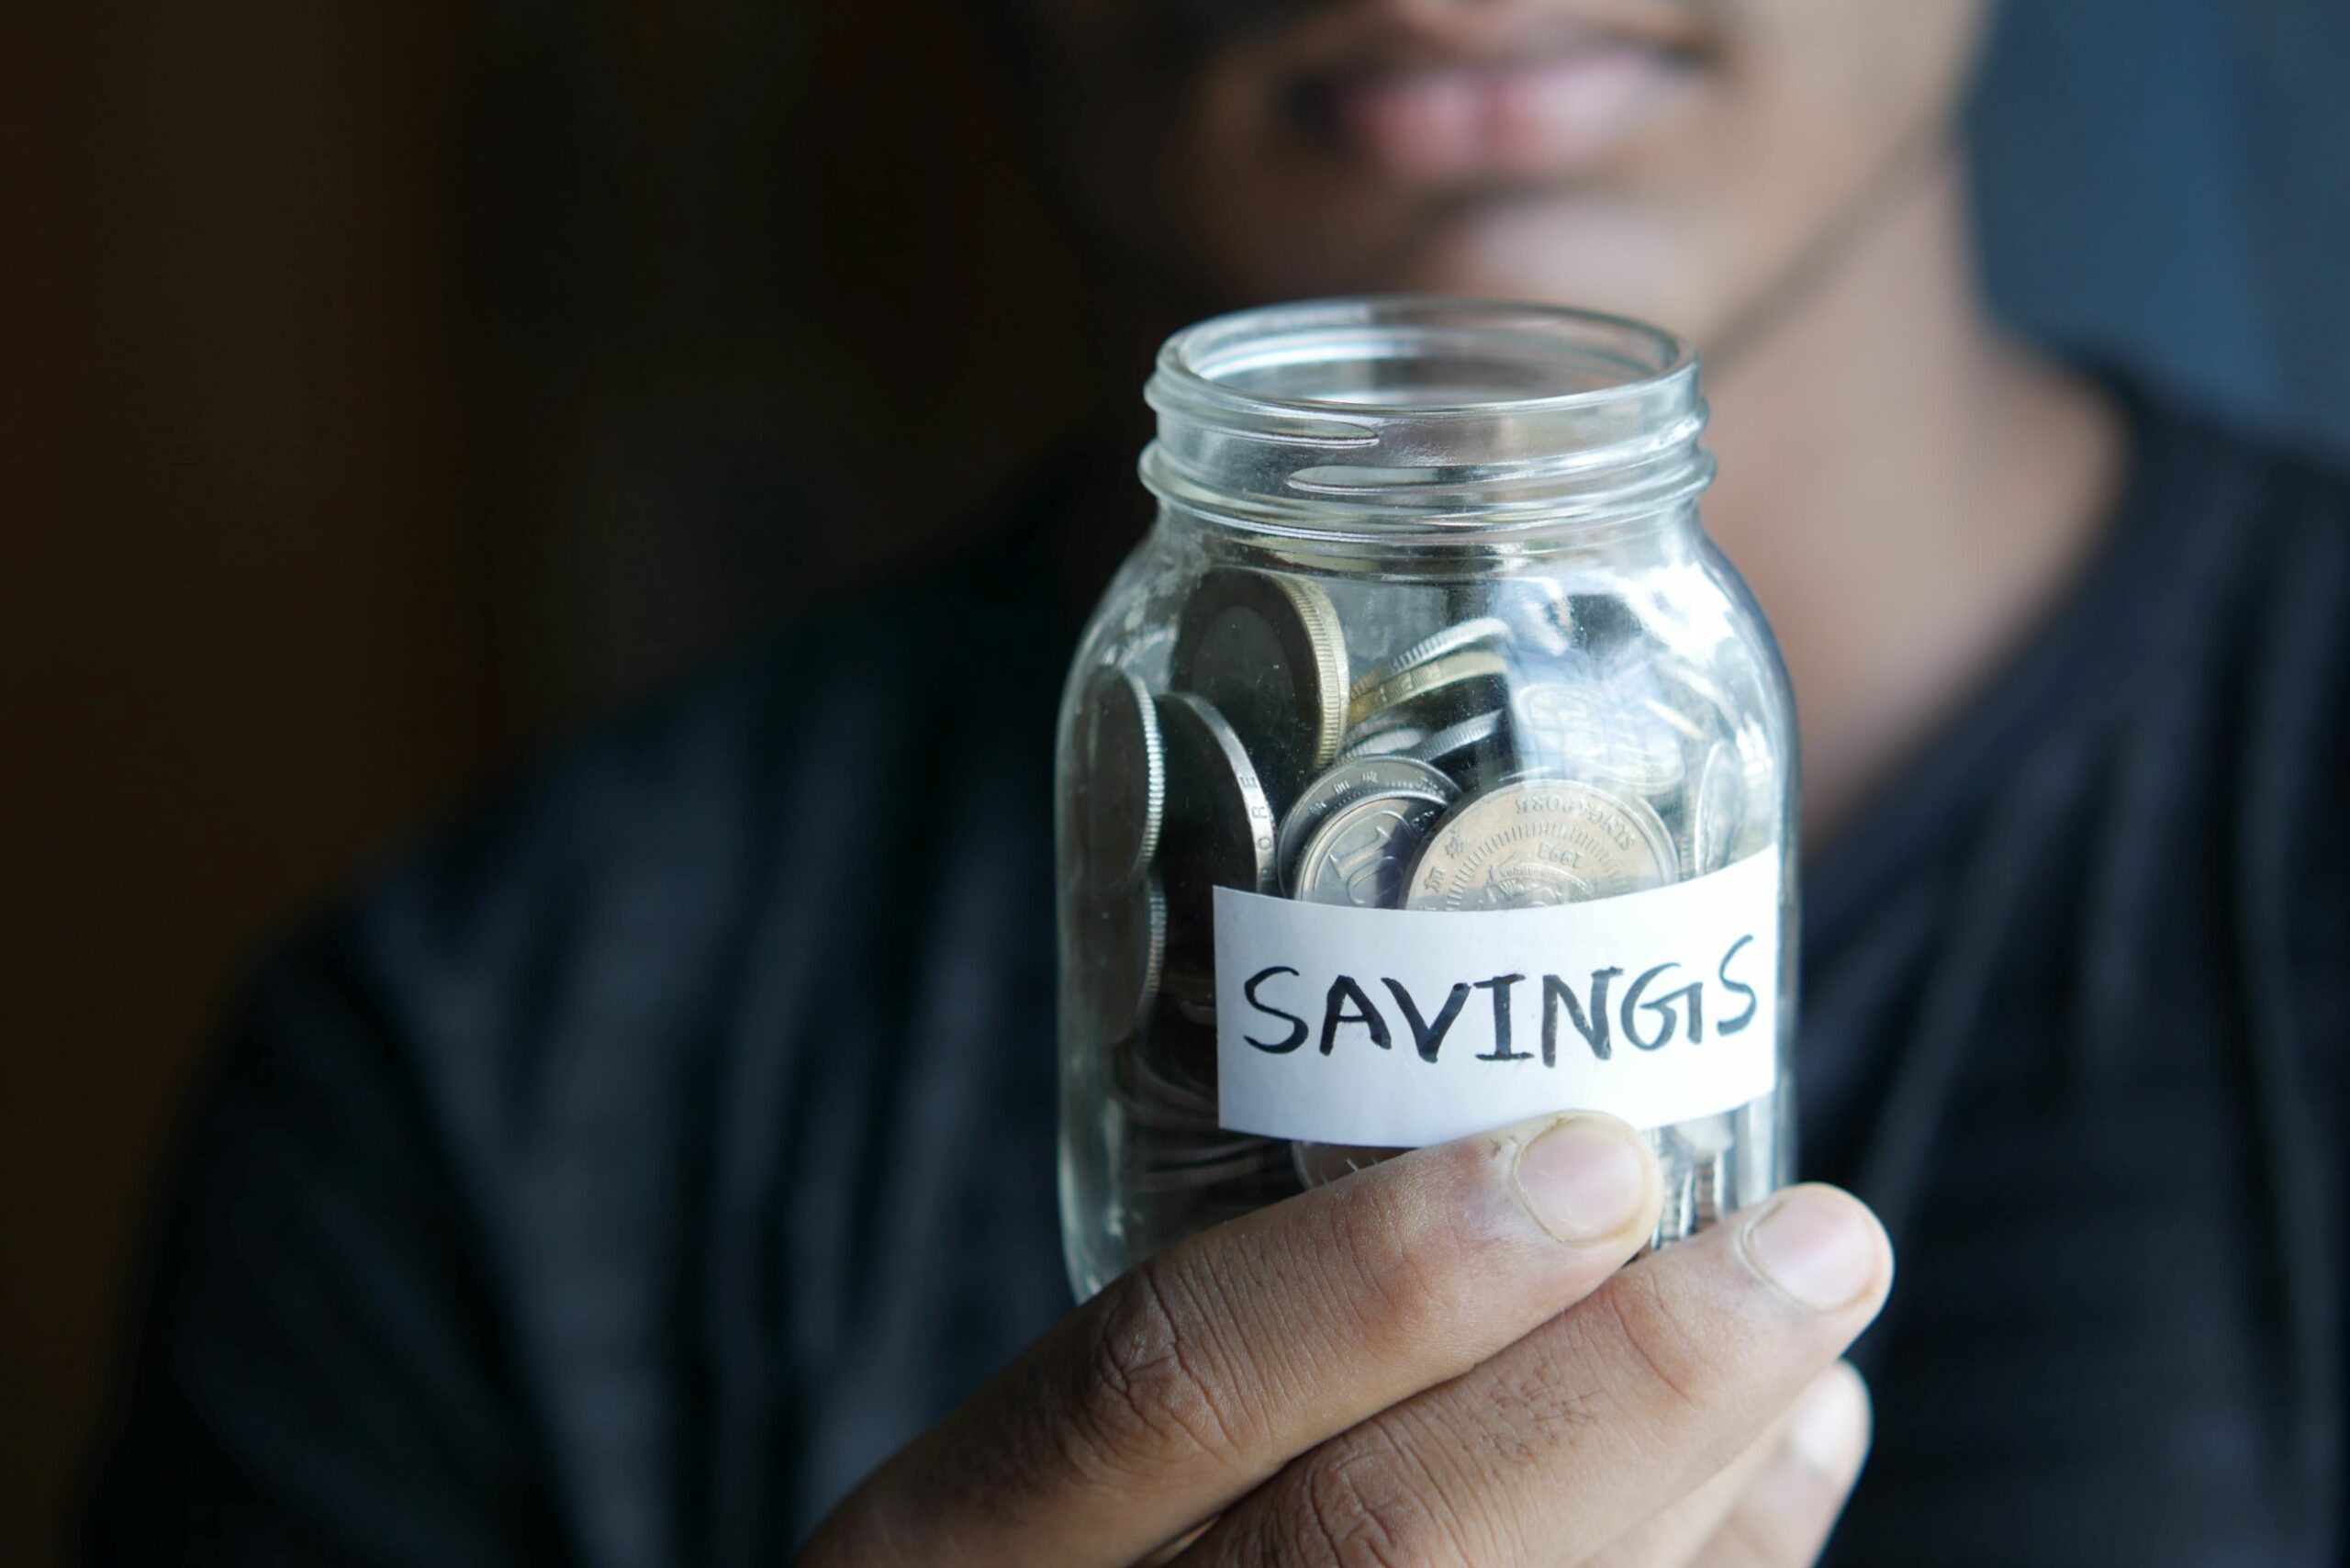 An image of a savings jar